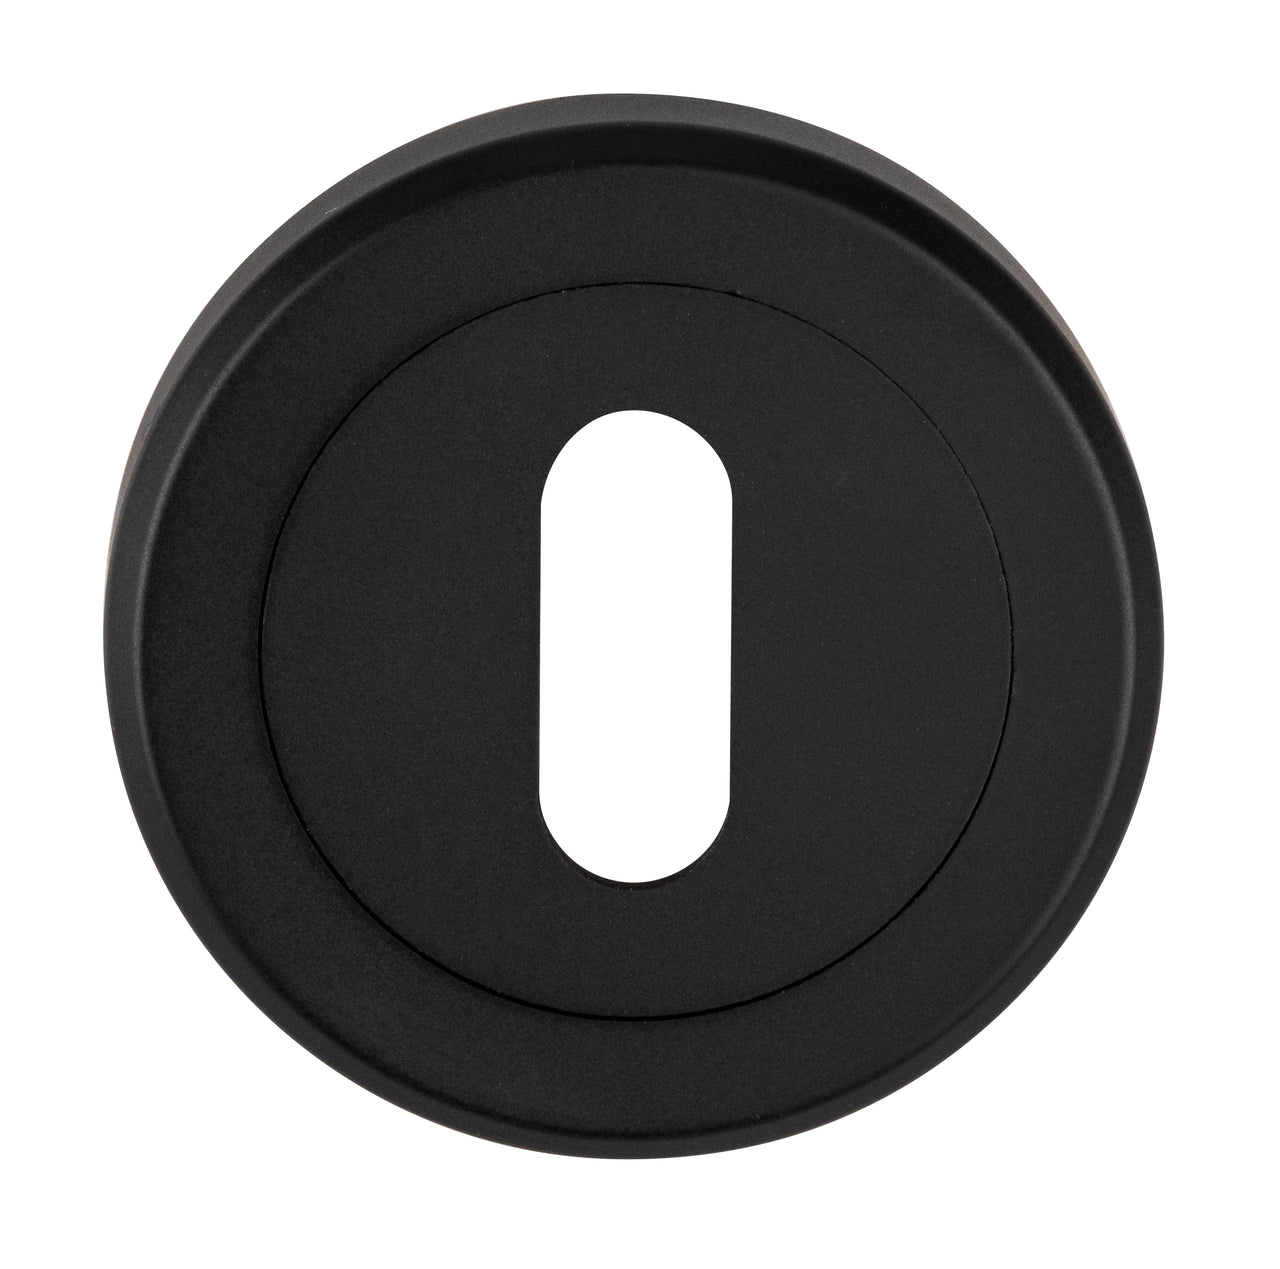 Matt Black Standard Keyhole Profile Escutcheon 50mm - M4D002MB